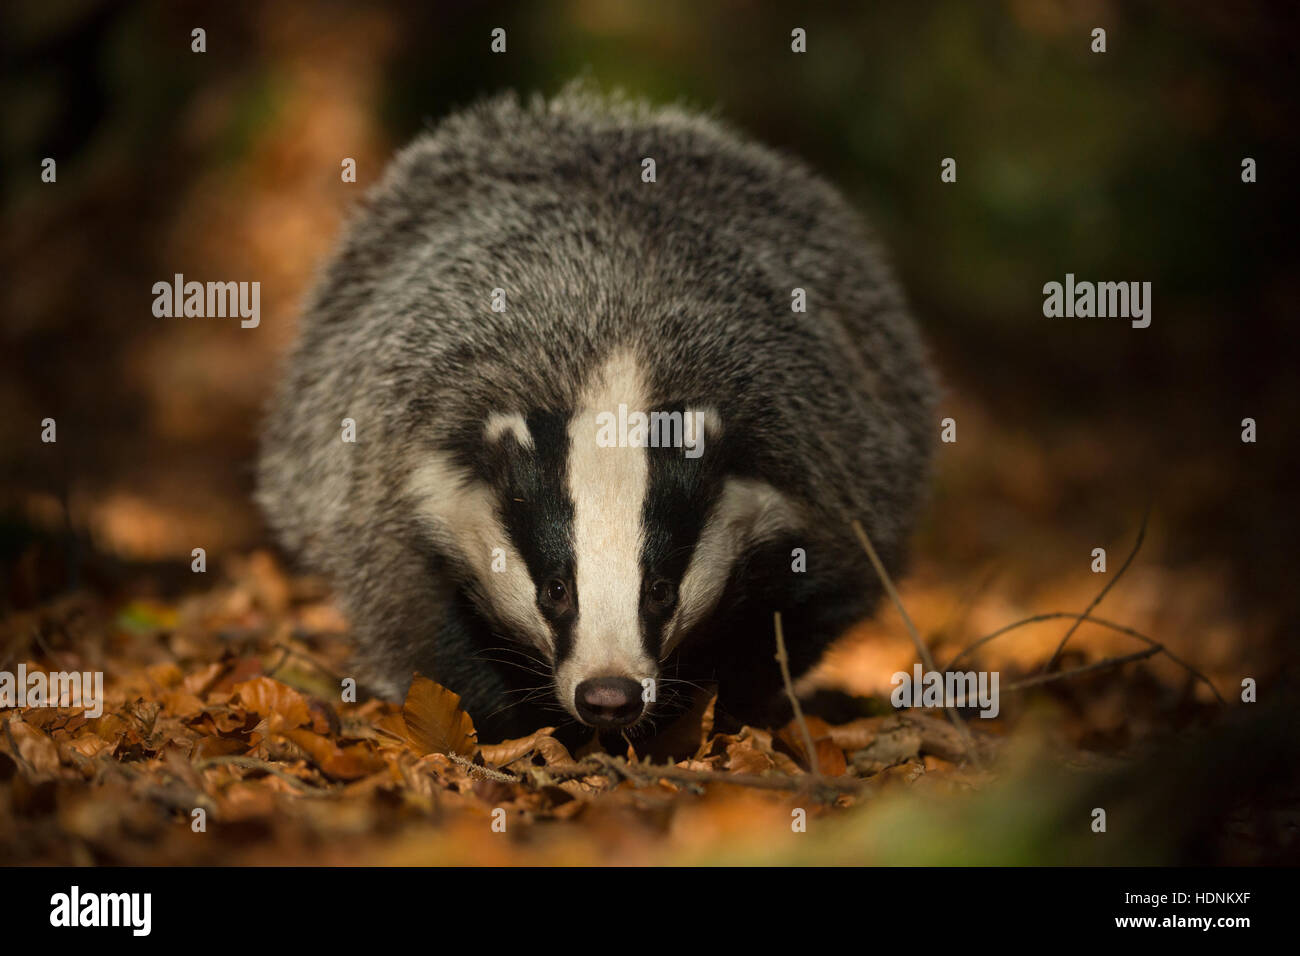 Europäische Badger / Dachs (Meles Meles), erwachsenes Tier, auf der Suche nach Nahrung auf dem Boden ein Laubwald, frontal aufgenommen. Stockfoto